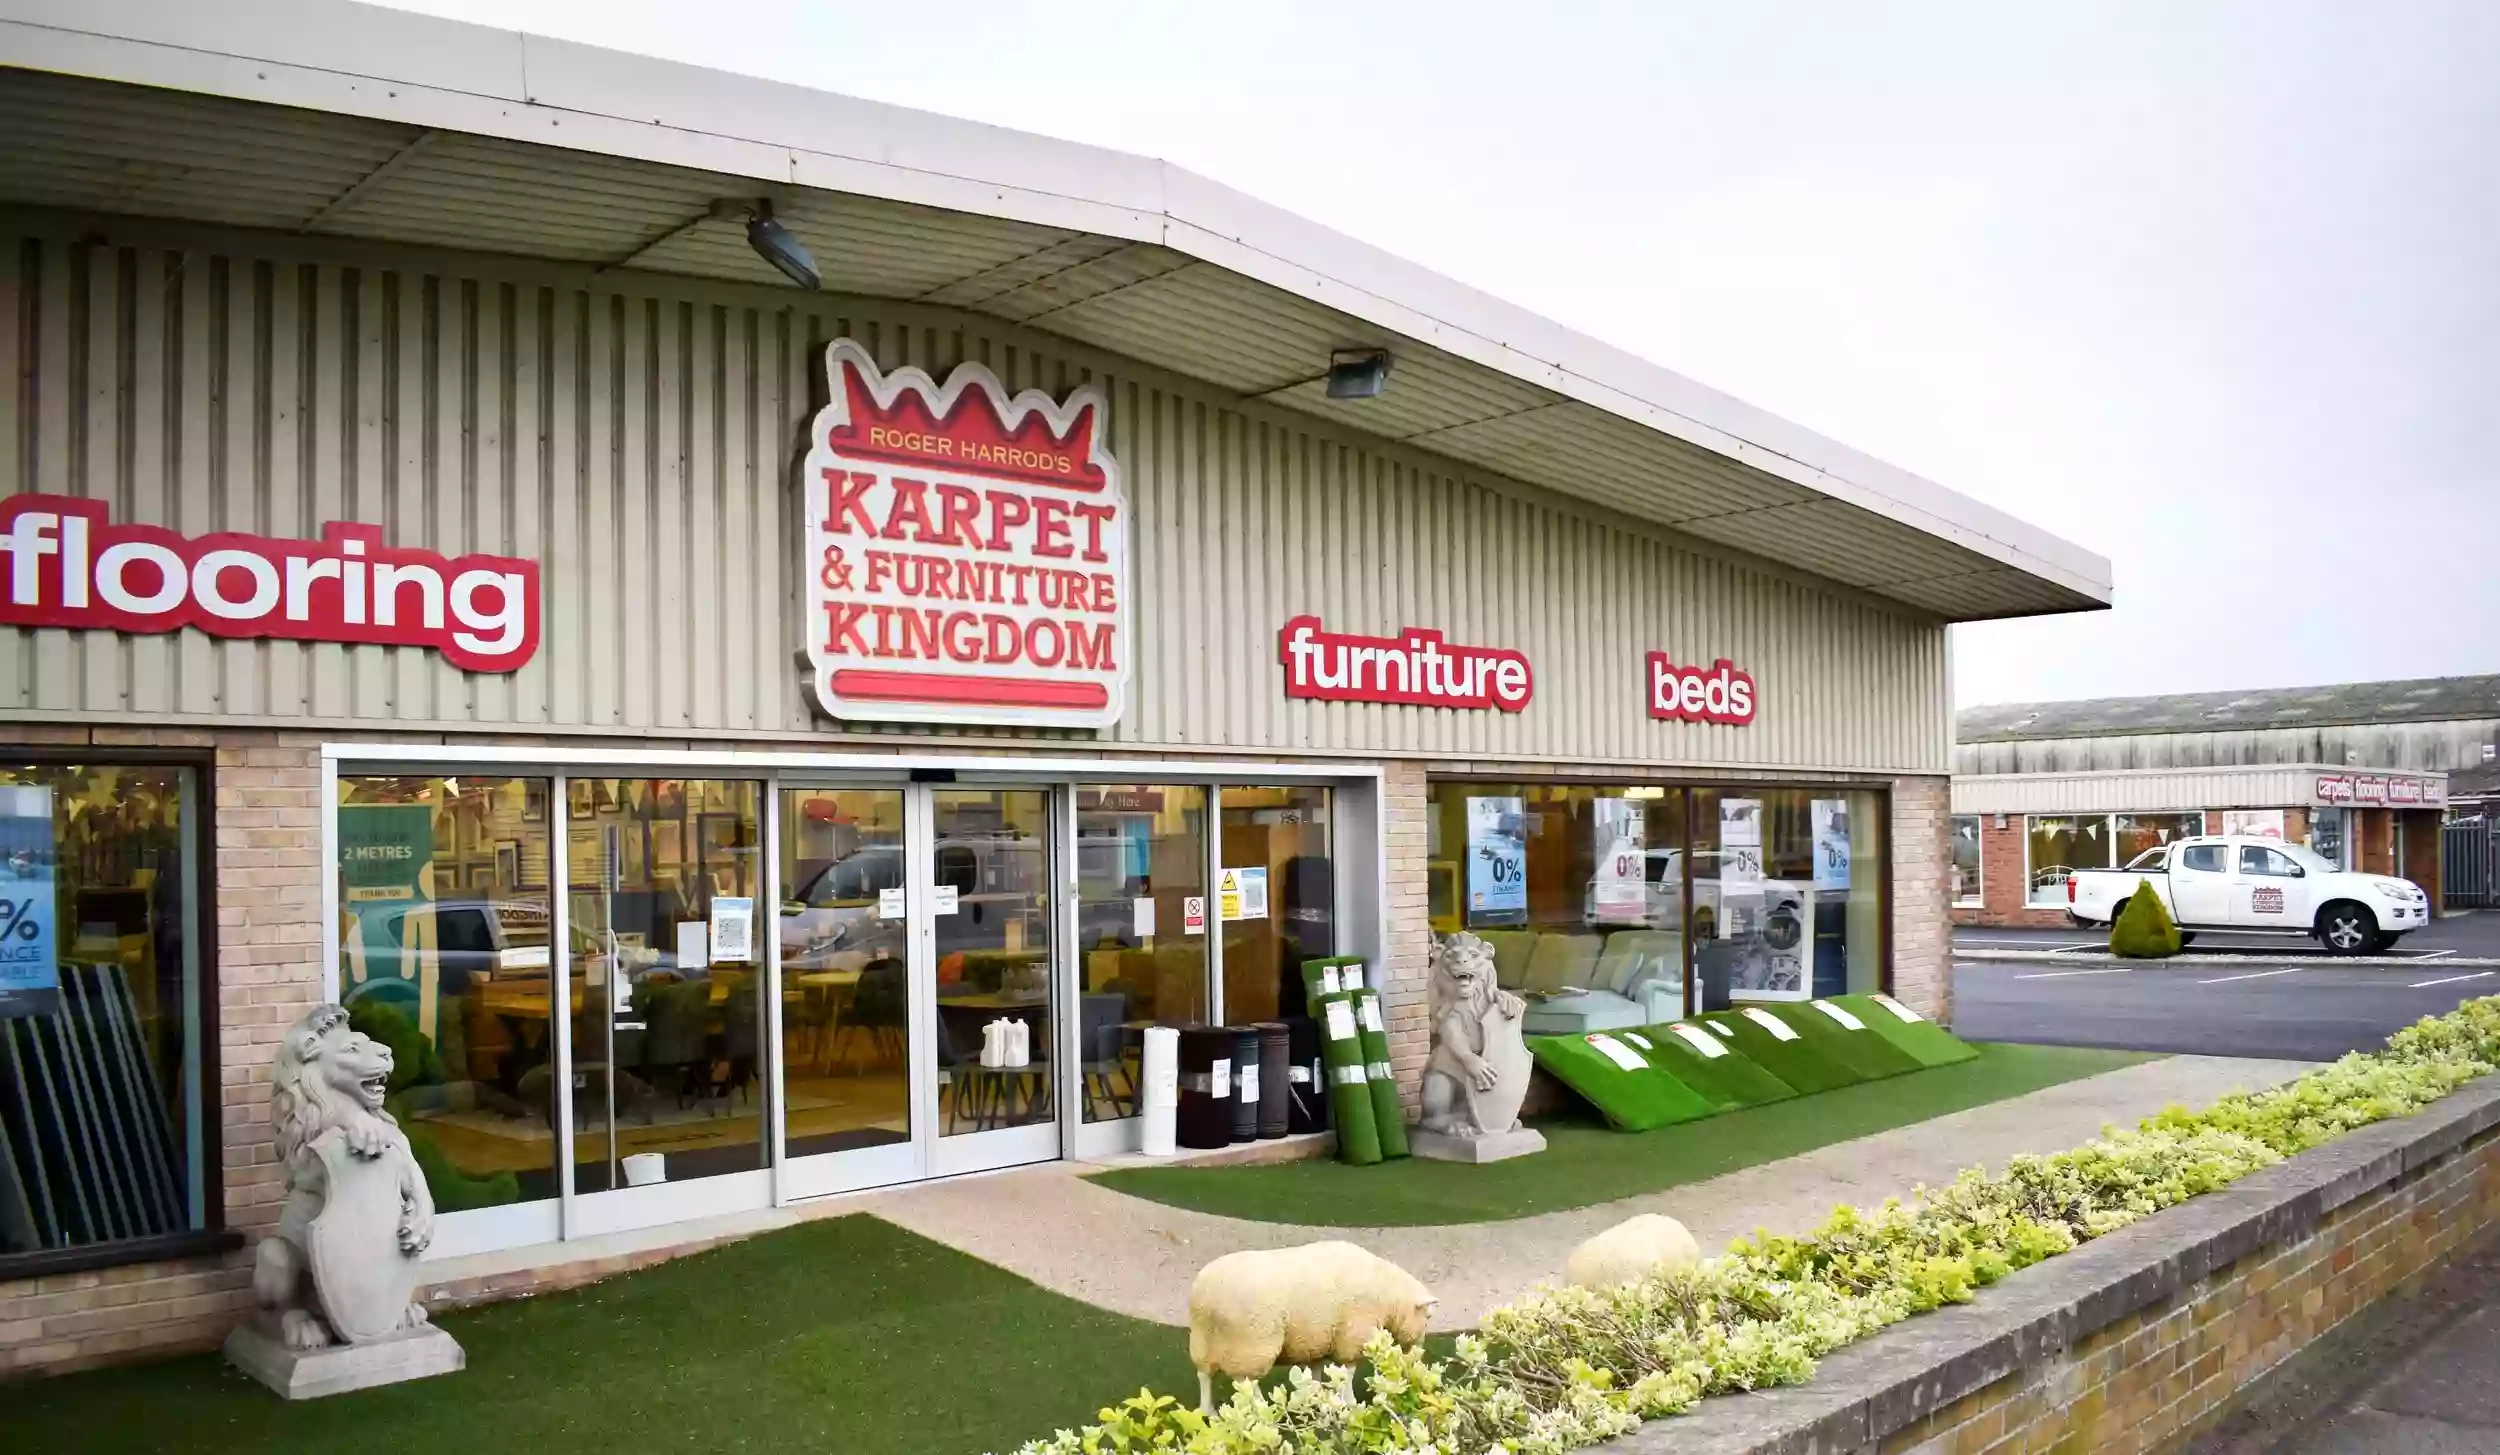 Roger Harrod's Karpet & Furniture Kingdom